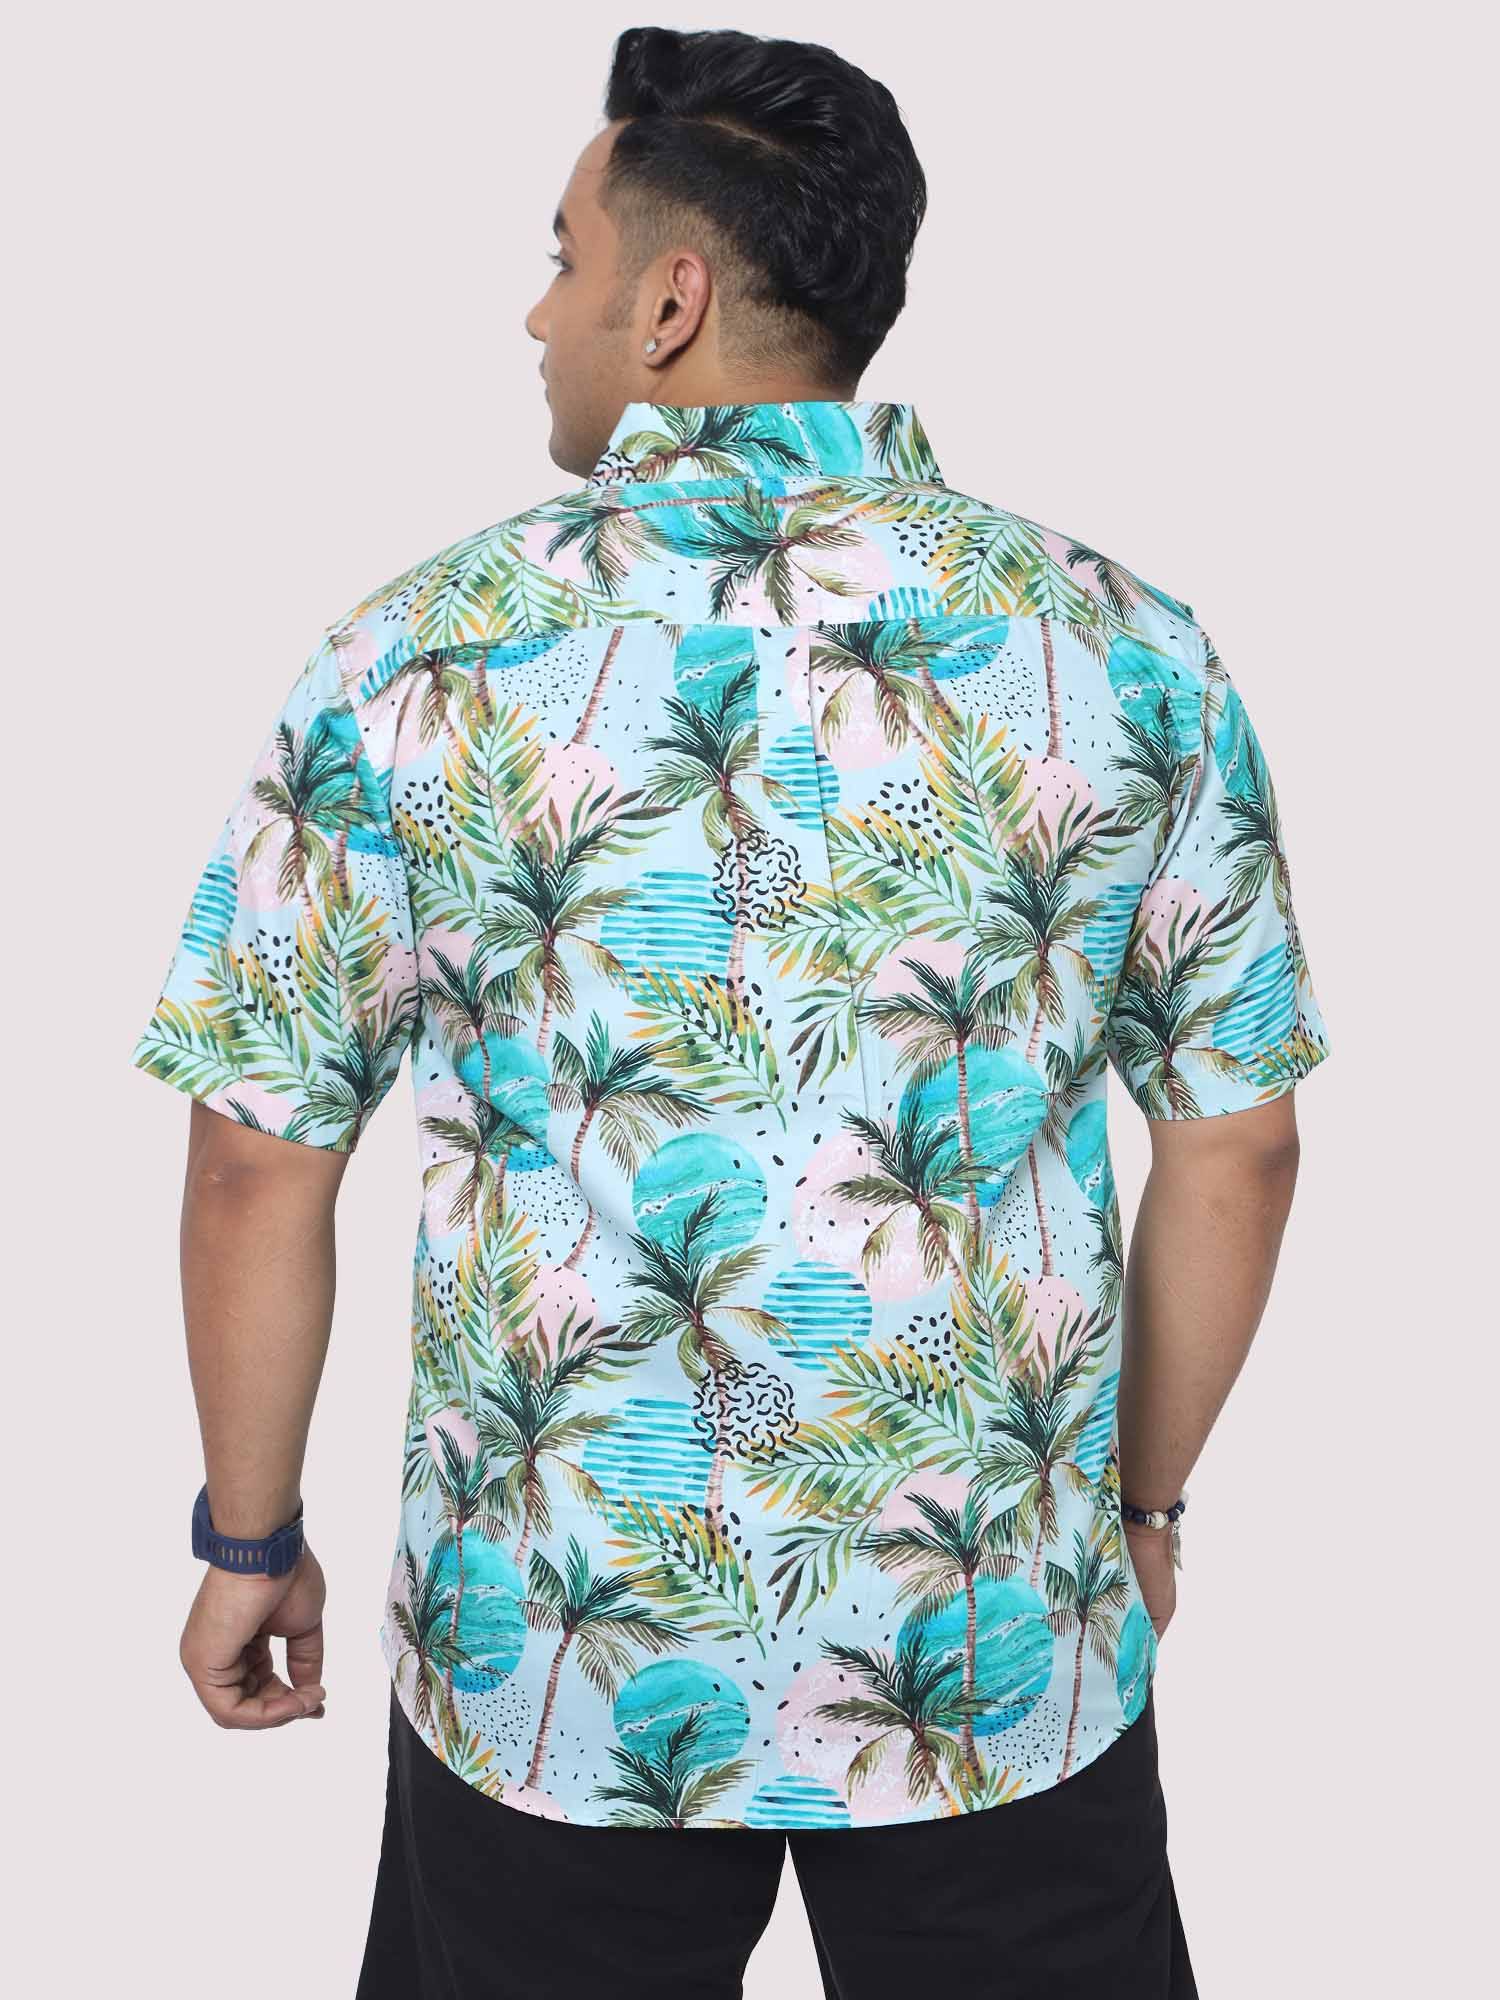 Men Plus Size Coco Fashion Digital Printed Half Shirt - Guniaa Fashions